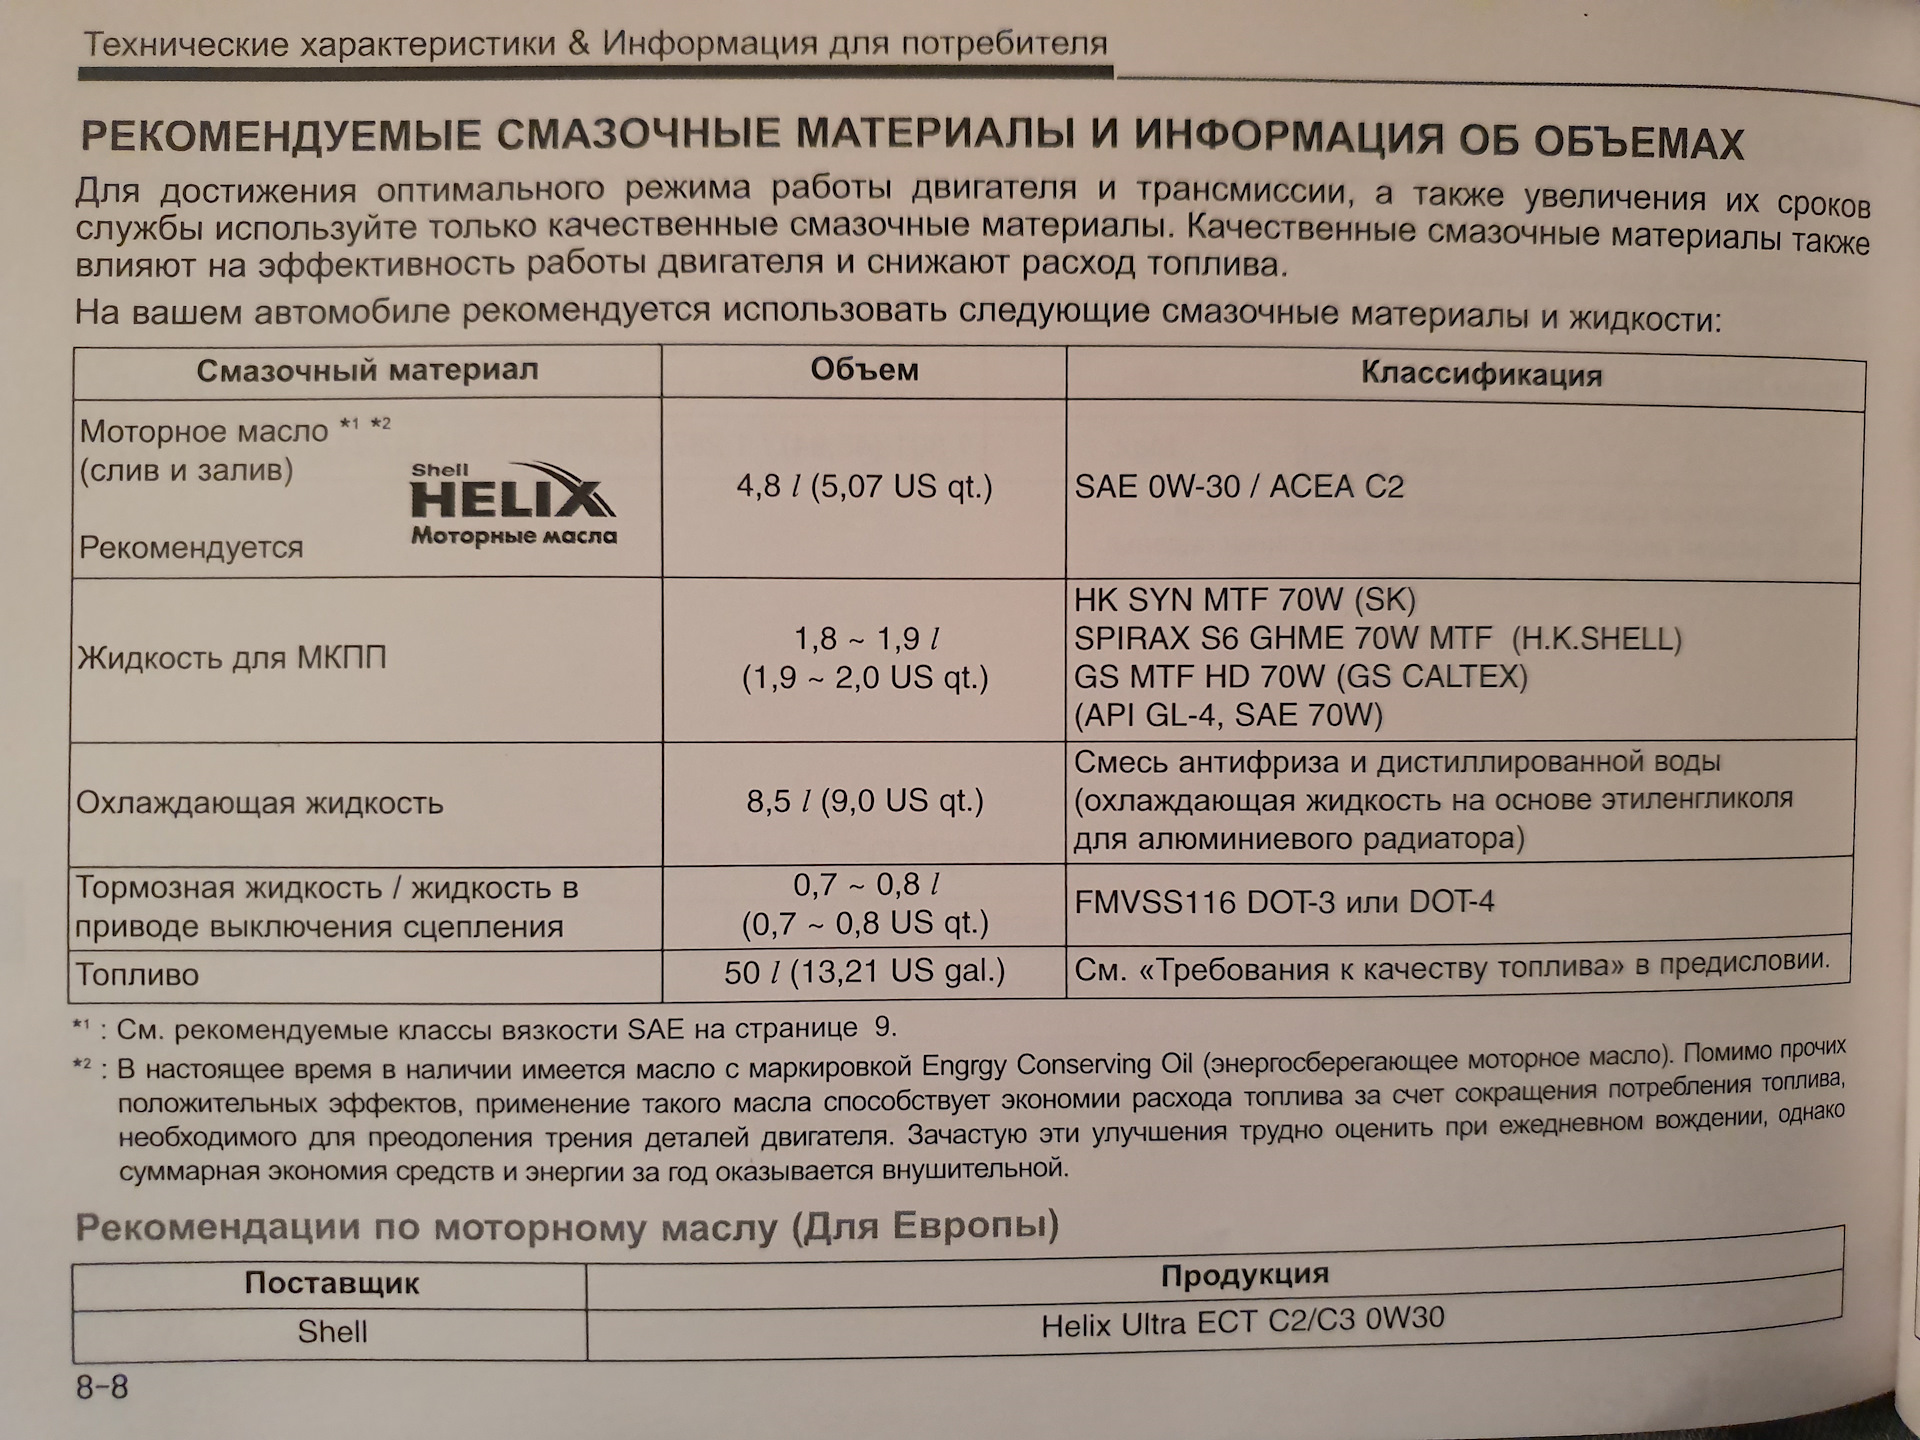 Сколько масла в хендай солярис 1.6. Допуски масла для Хендай Солярис 1.6. Solaris Hyundai 2015 допуски масла 1,6. Допуски моторного масла Хендай i30 1,6. Допуски масла Хендай Солярис 1.4.